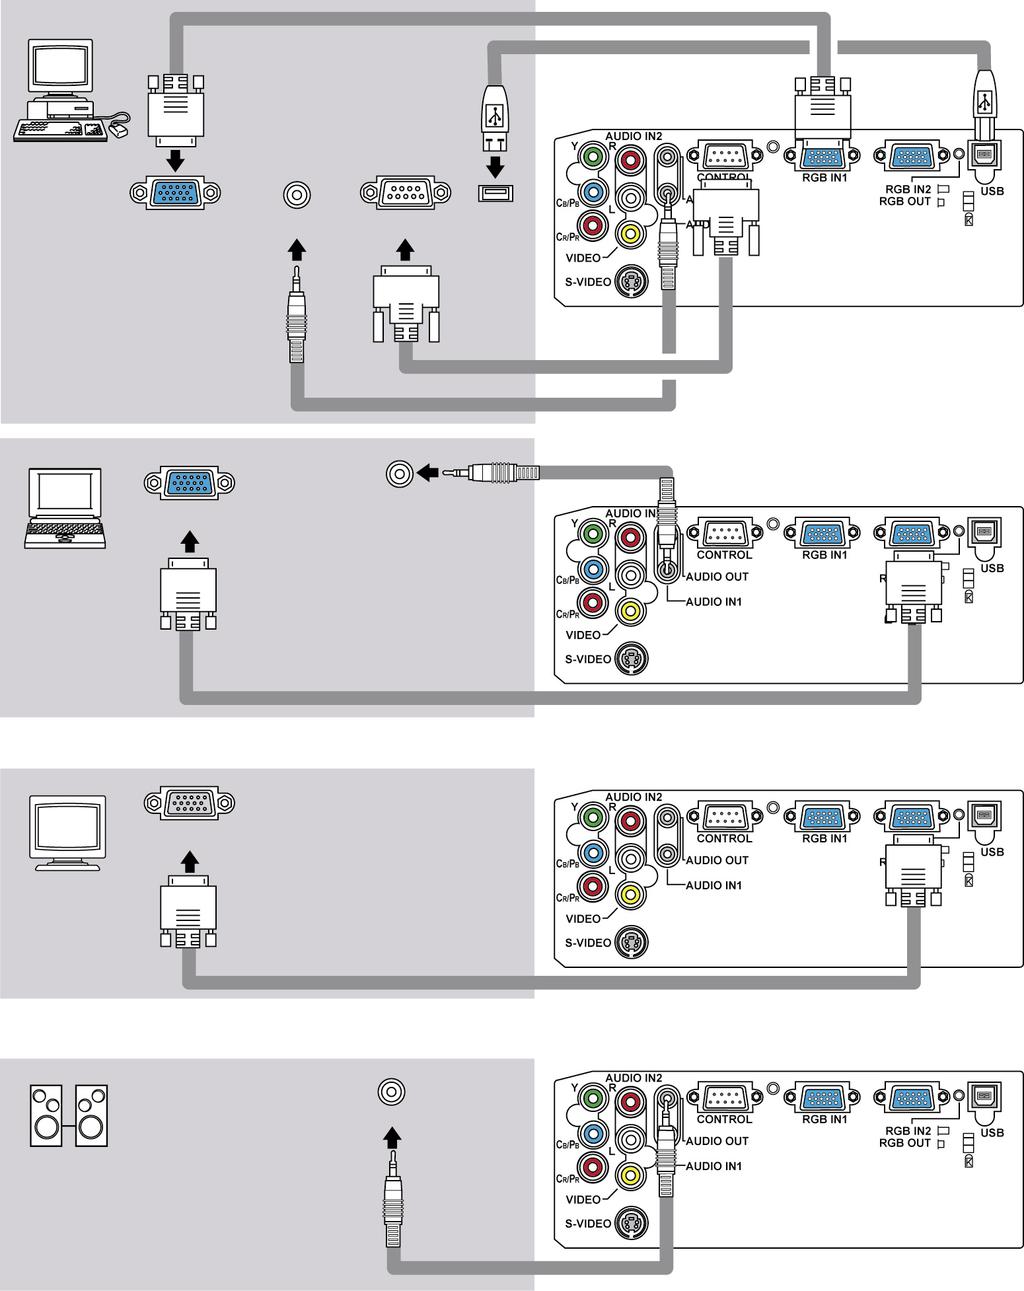 Käyttövalmistelut Esimerkkejä liittämisestä tietokoneeseen * Oletusasetuksella AUDIO IN1 -portti on ääniportti RGB IN1 ja RGB IN2 -porteille.